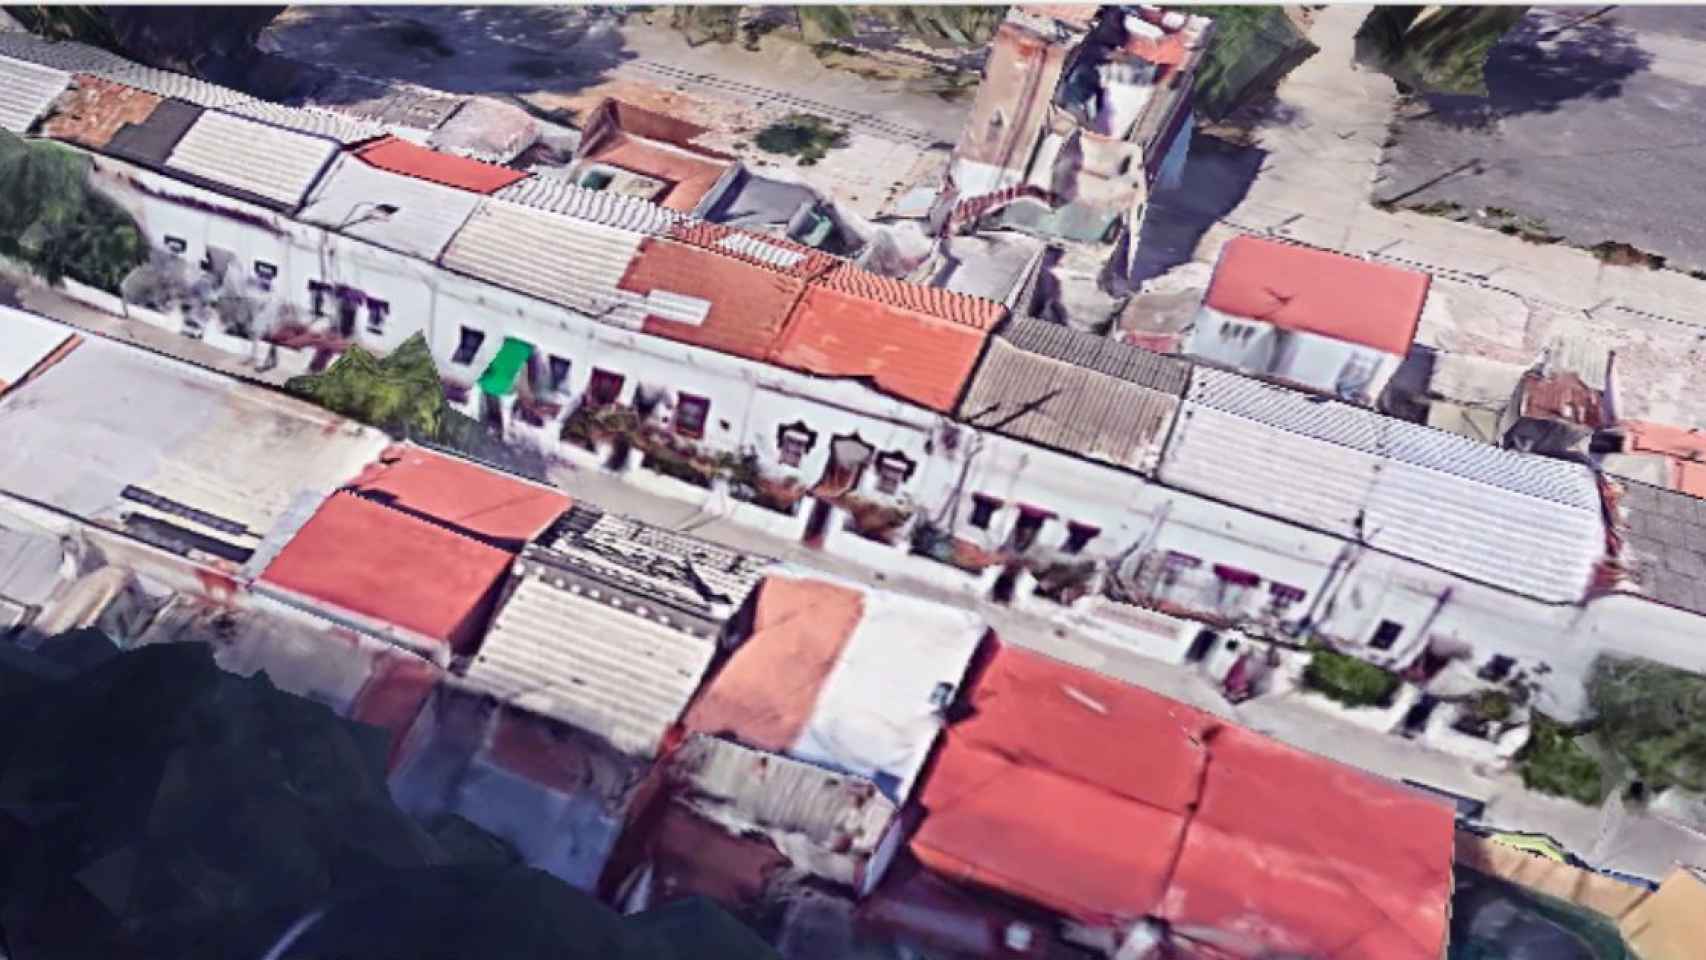 Vista aérea del sector de la Colònia Castells en el que residen las 15 familias que están pendientes de ser realojadas